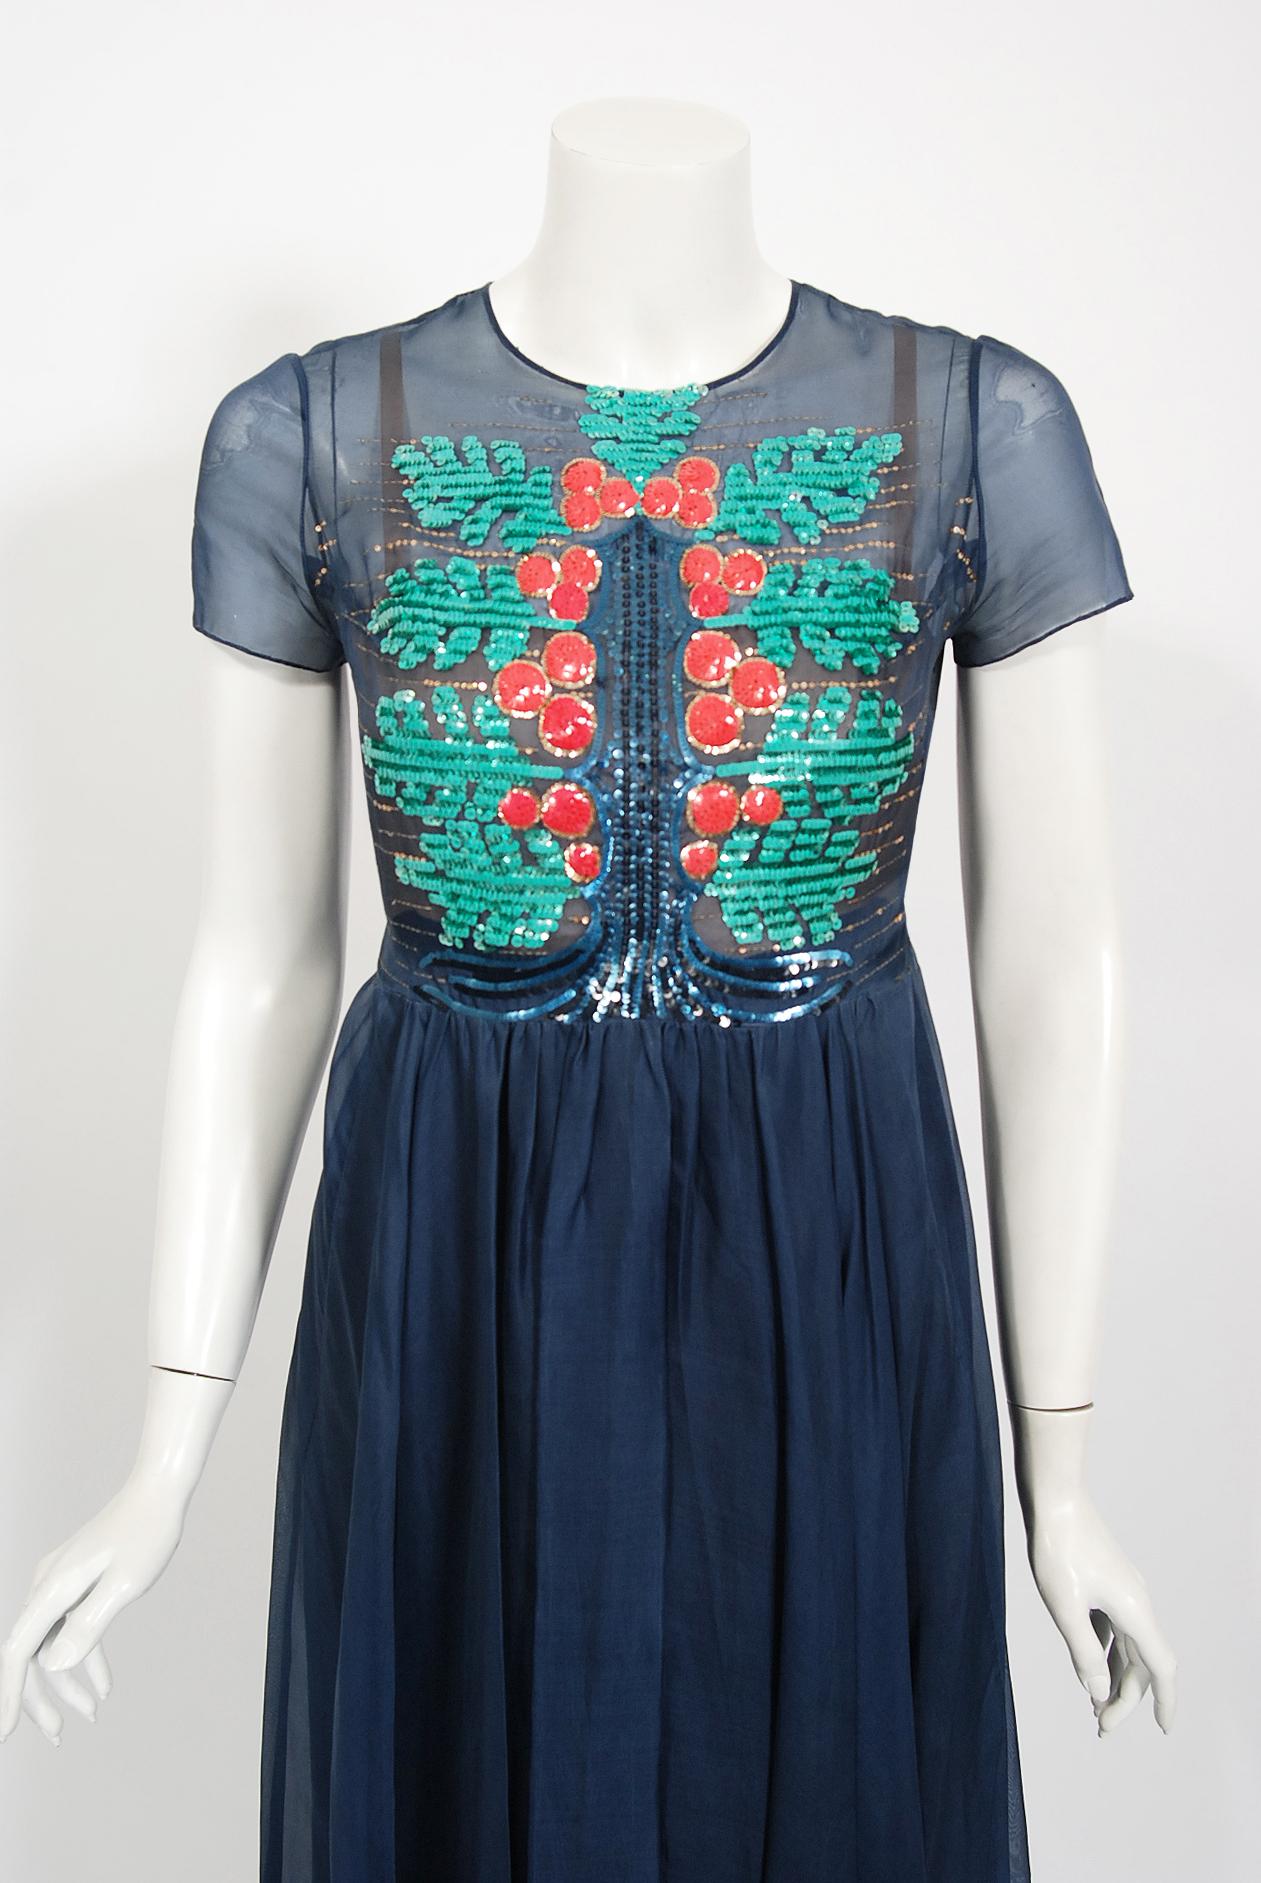 Magnifique ensemble de robe deux pièces haute couture Madame Gres datant du milieu des années 1970. Madame Gres estimait que le véritable travail du couturier ne consistait pas à se créer un nom, comme le font de nombreux créateurs, mais à accorder